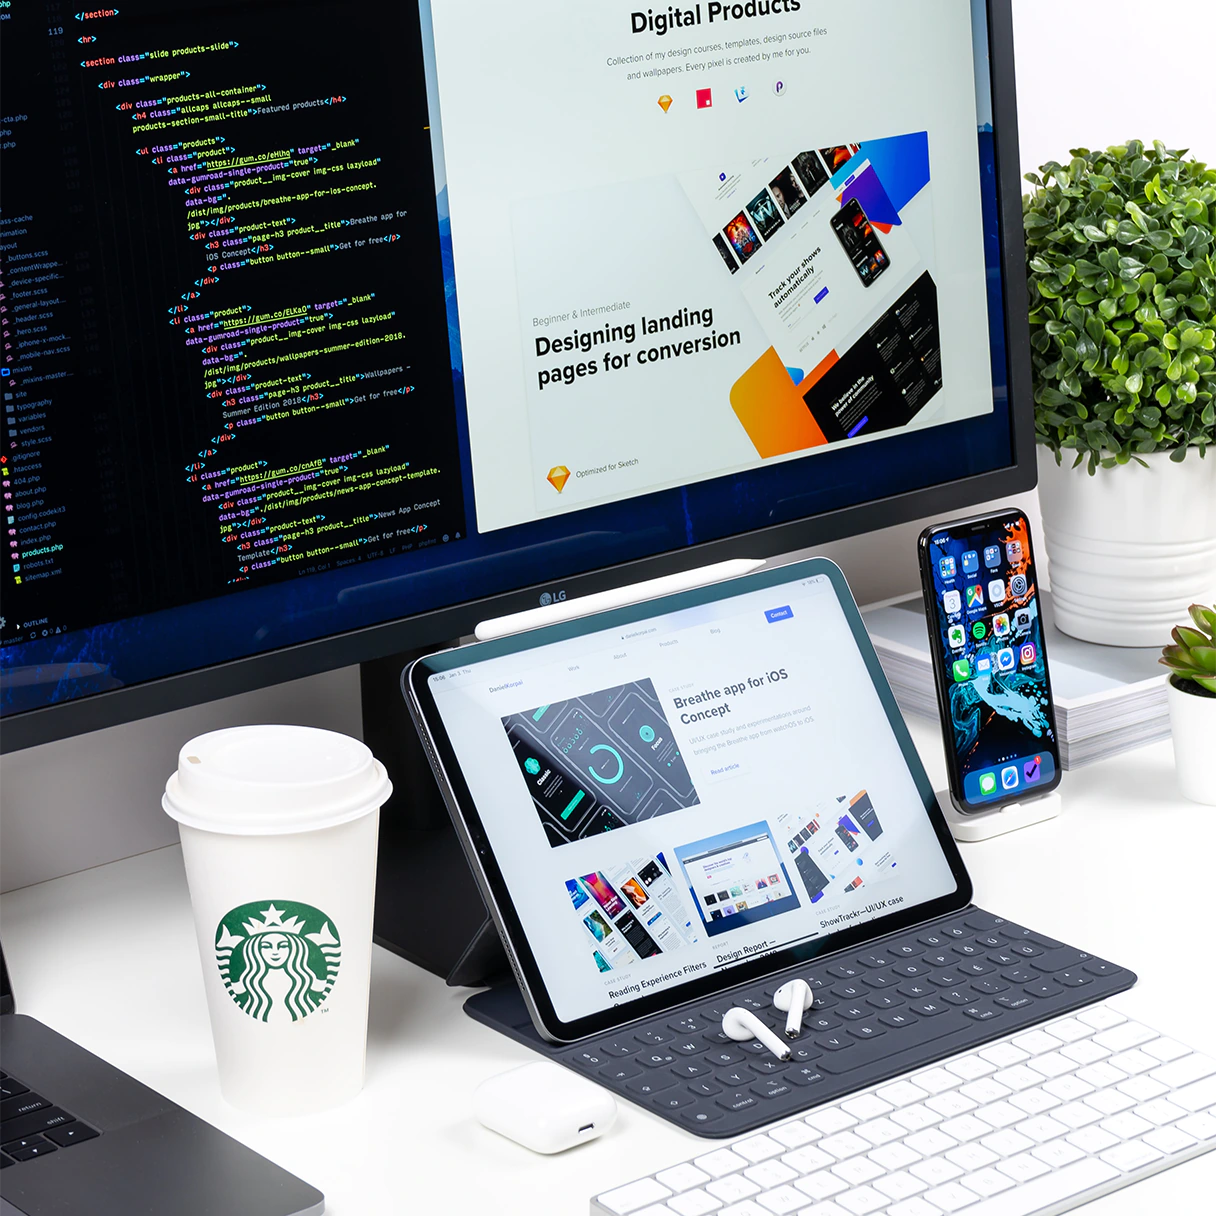 Schreibtisch eines Webentwicklers auf dem ein LG Bildschirm, iPad Tablet mit Tastatur, iPhone Smartphone und Starbucks Cafe steht.